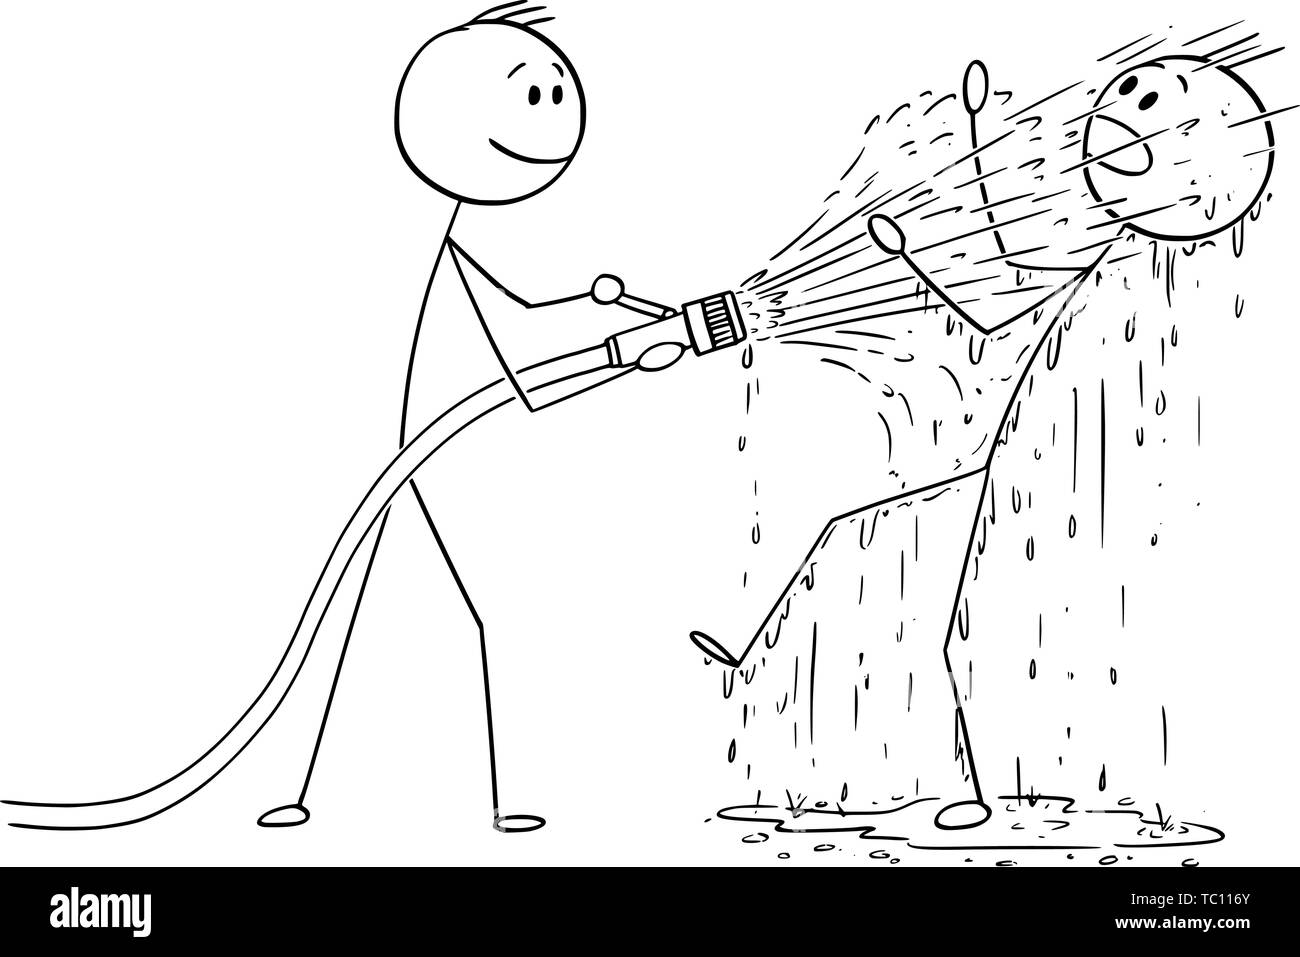 Vector cartoon stick figure dessin illustration conceptuelle de l'homme ou businessman holding big le tuyau d'incendie et de tir de l'eau sur un autre homme qui est complètement mouillé. Illustration de Vecteur